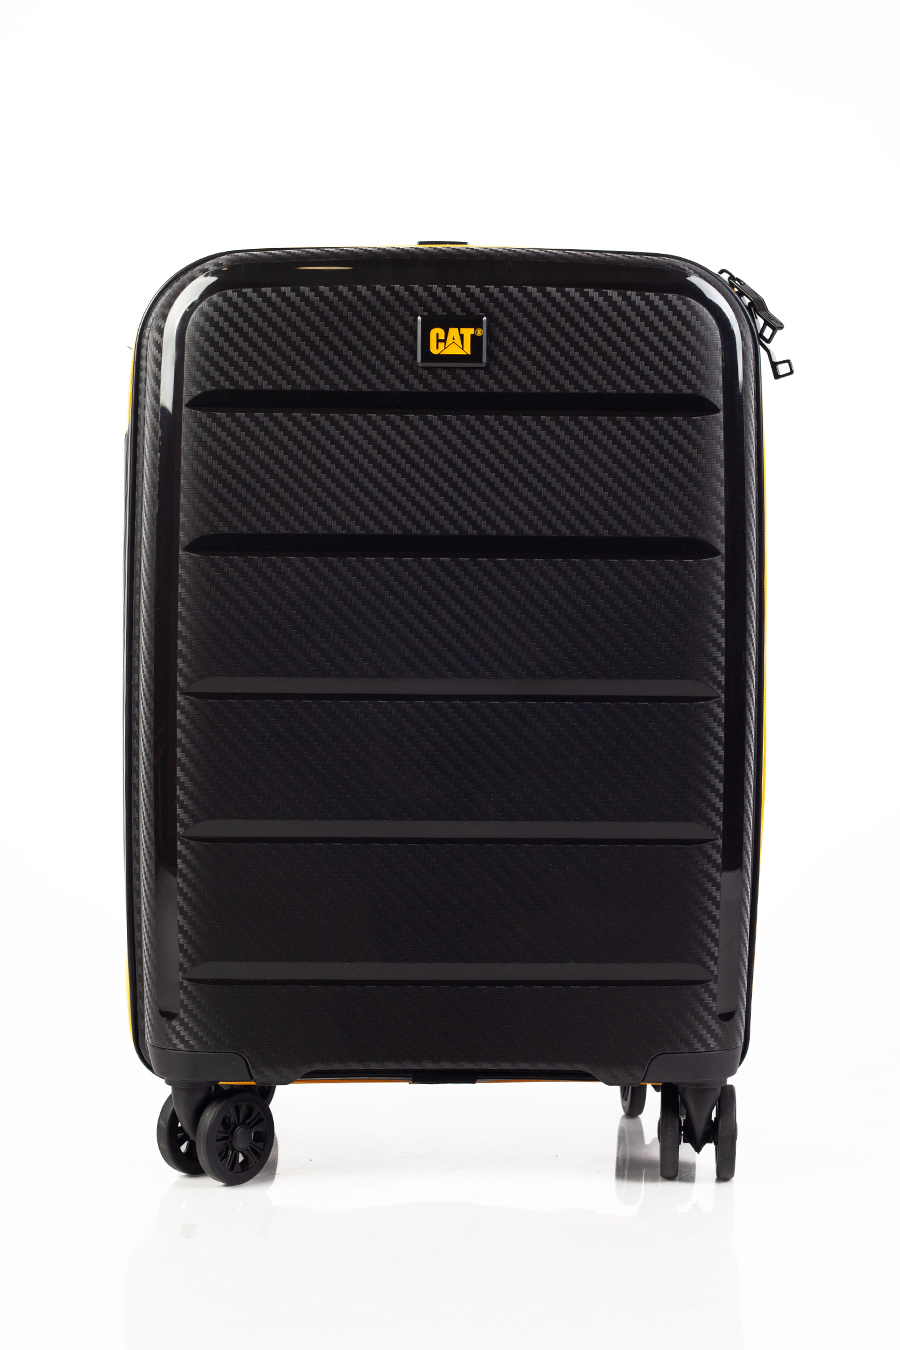 Travel suitcase CAT 84380-01